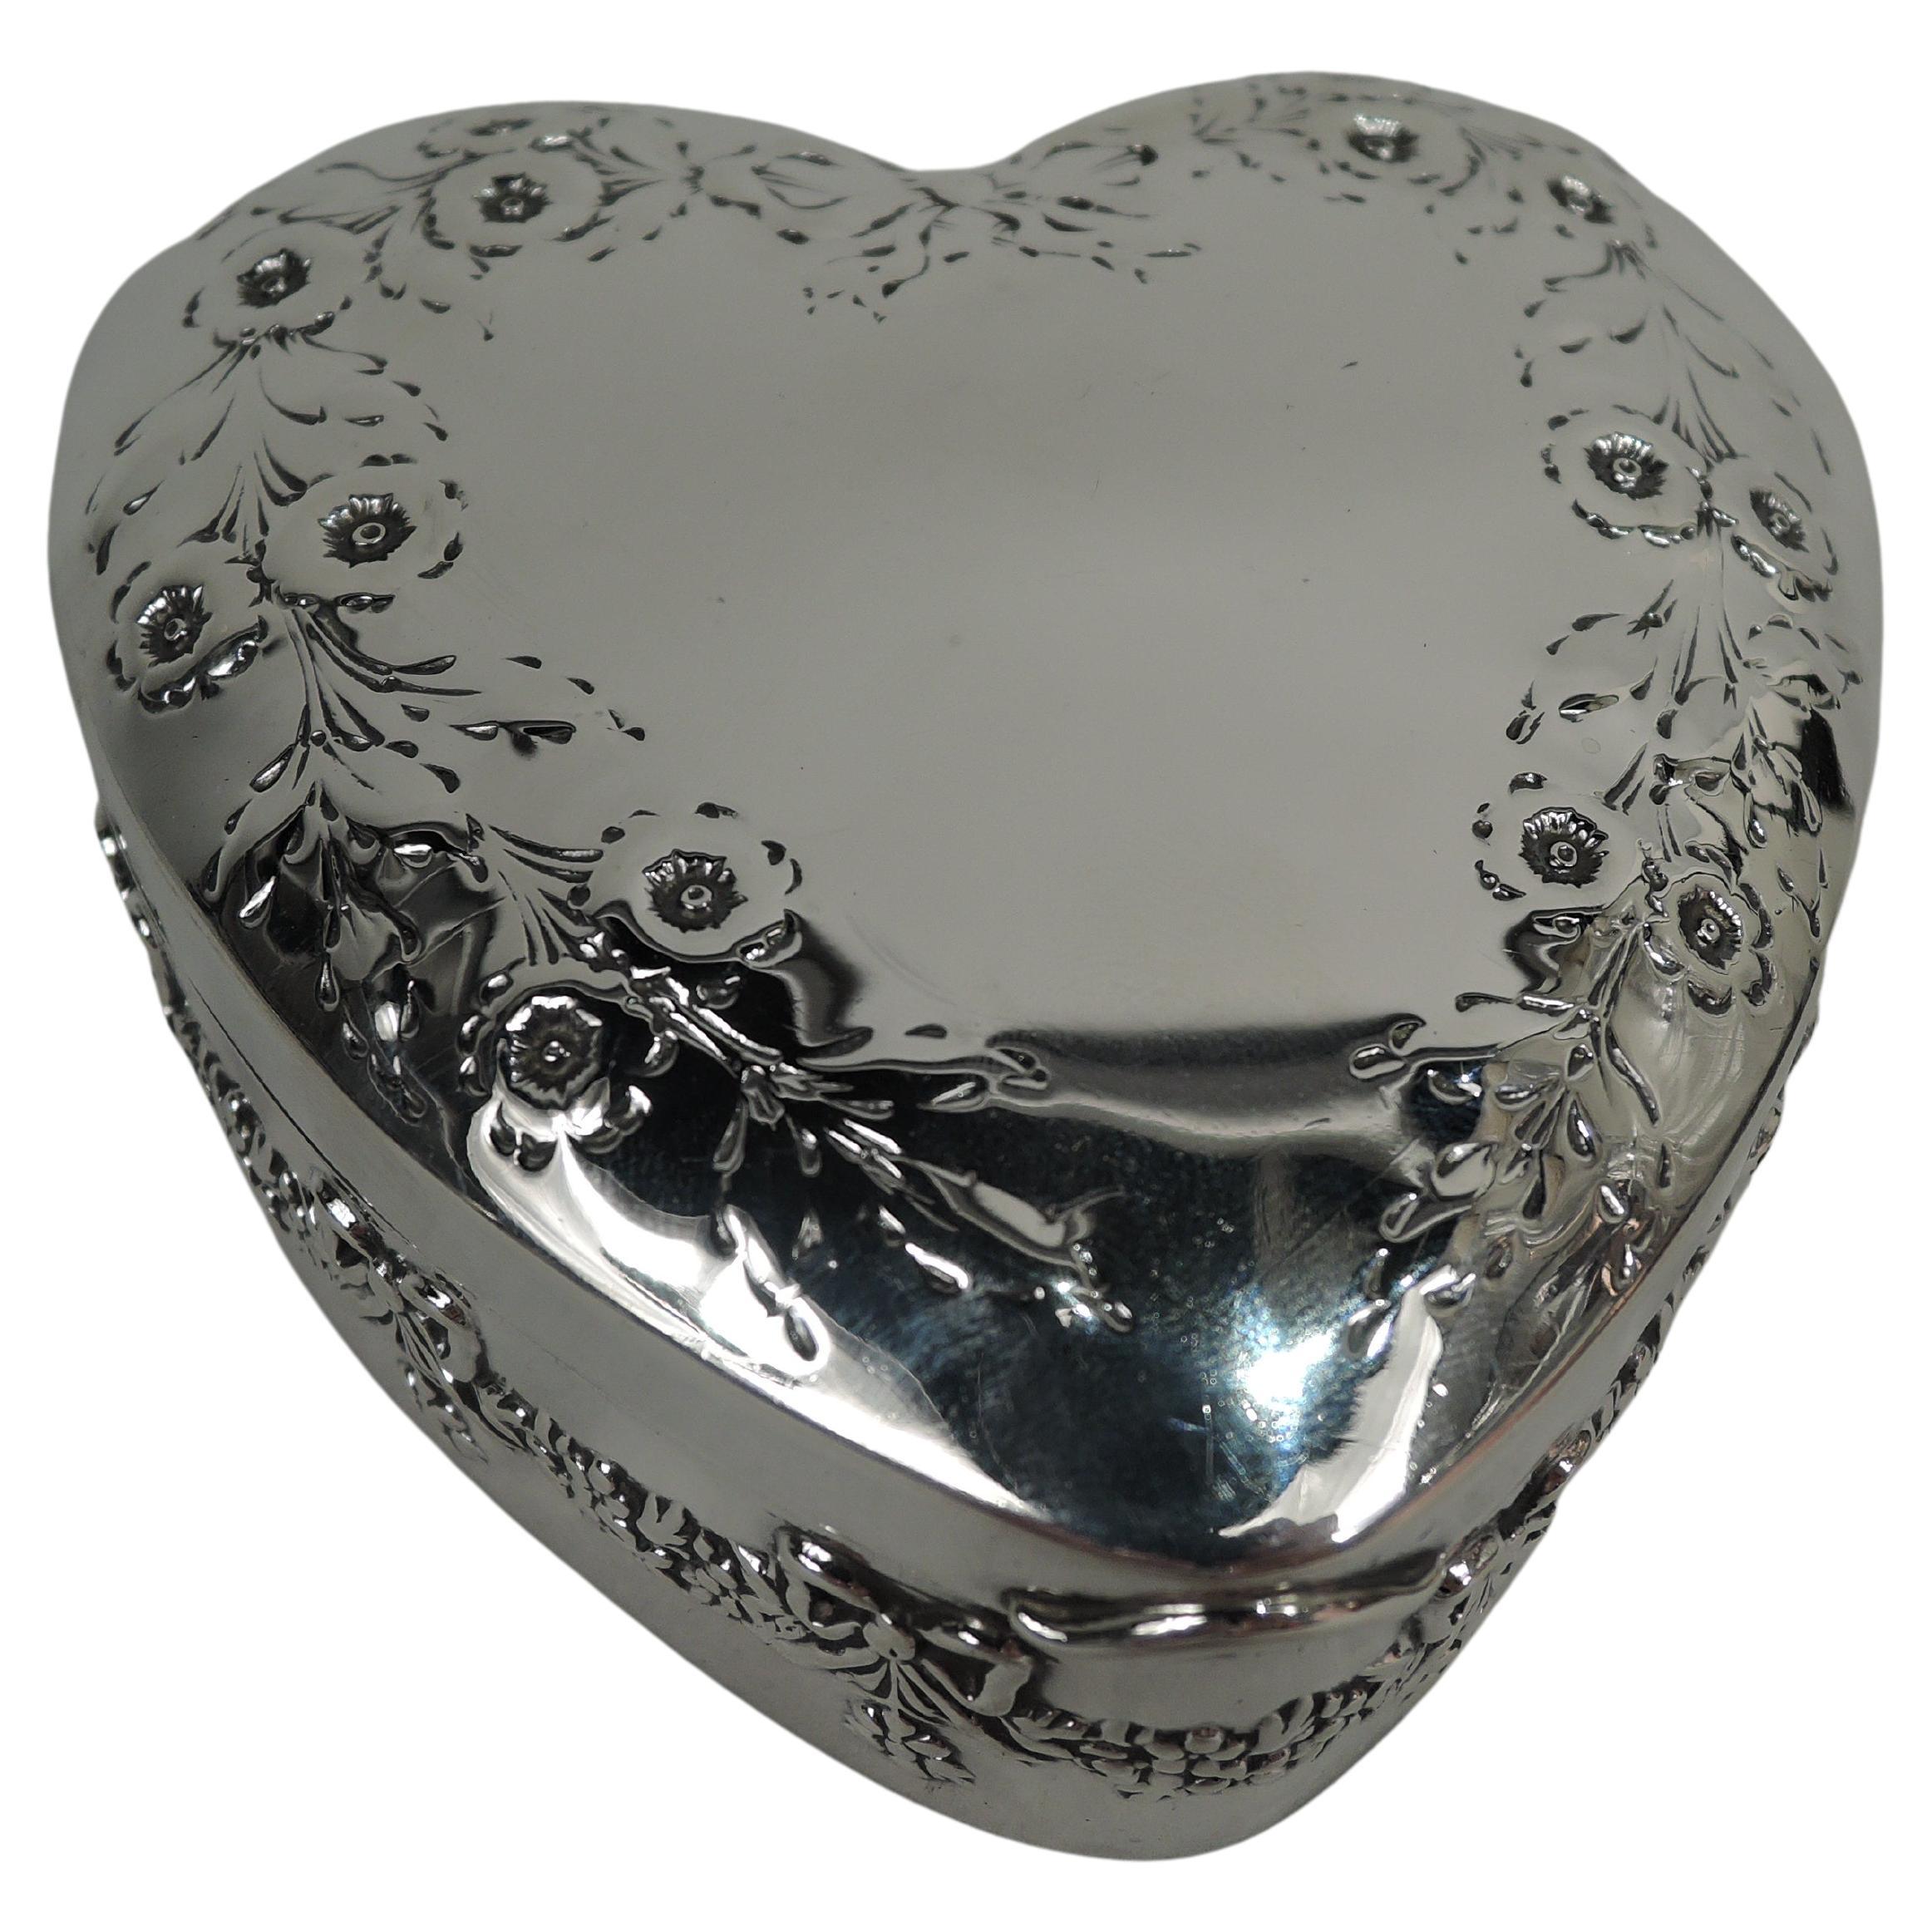 Antique American Edwardian Regency Heart-Shaped Trinket Box For Sale